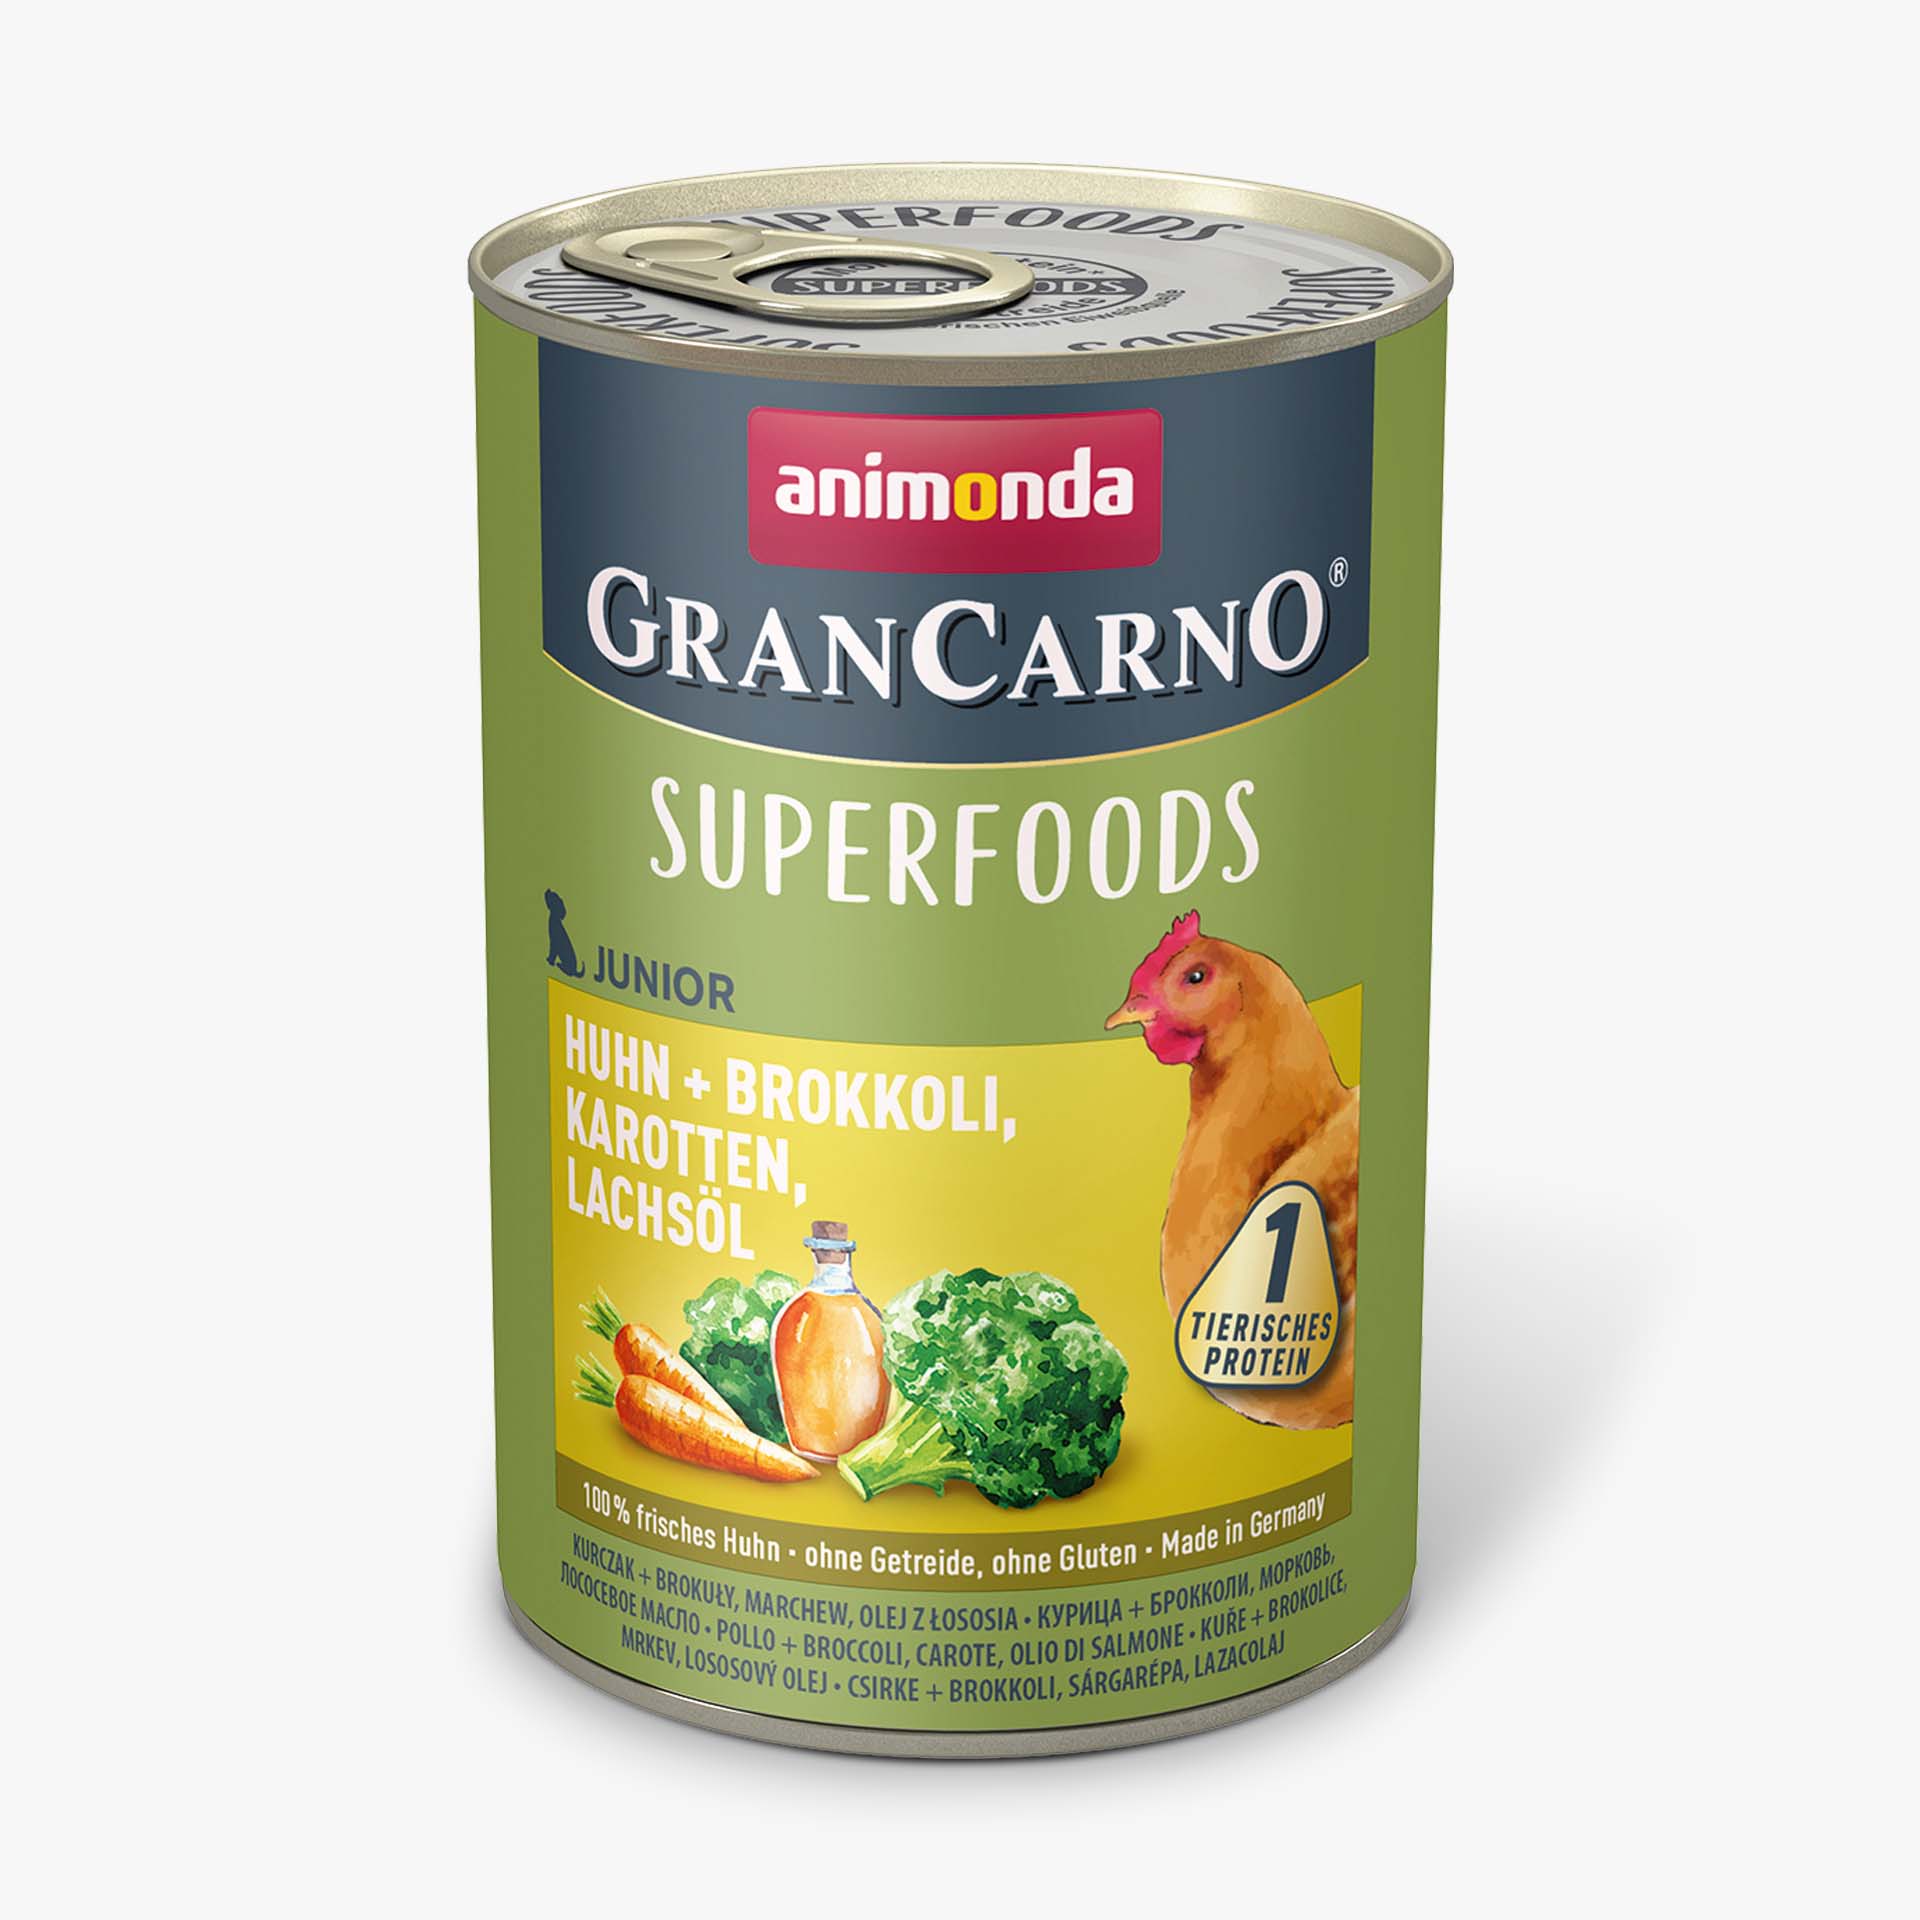 GranCarno Junior Superfoods Huhn + Brokkoli, Karotten, Lachsöl